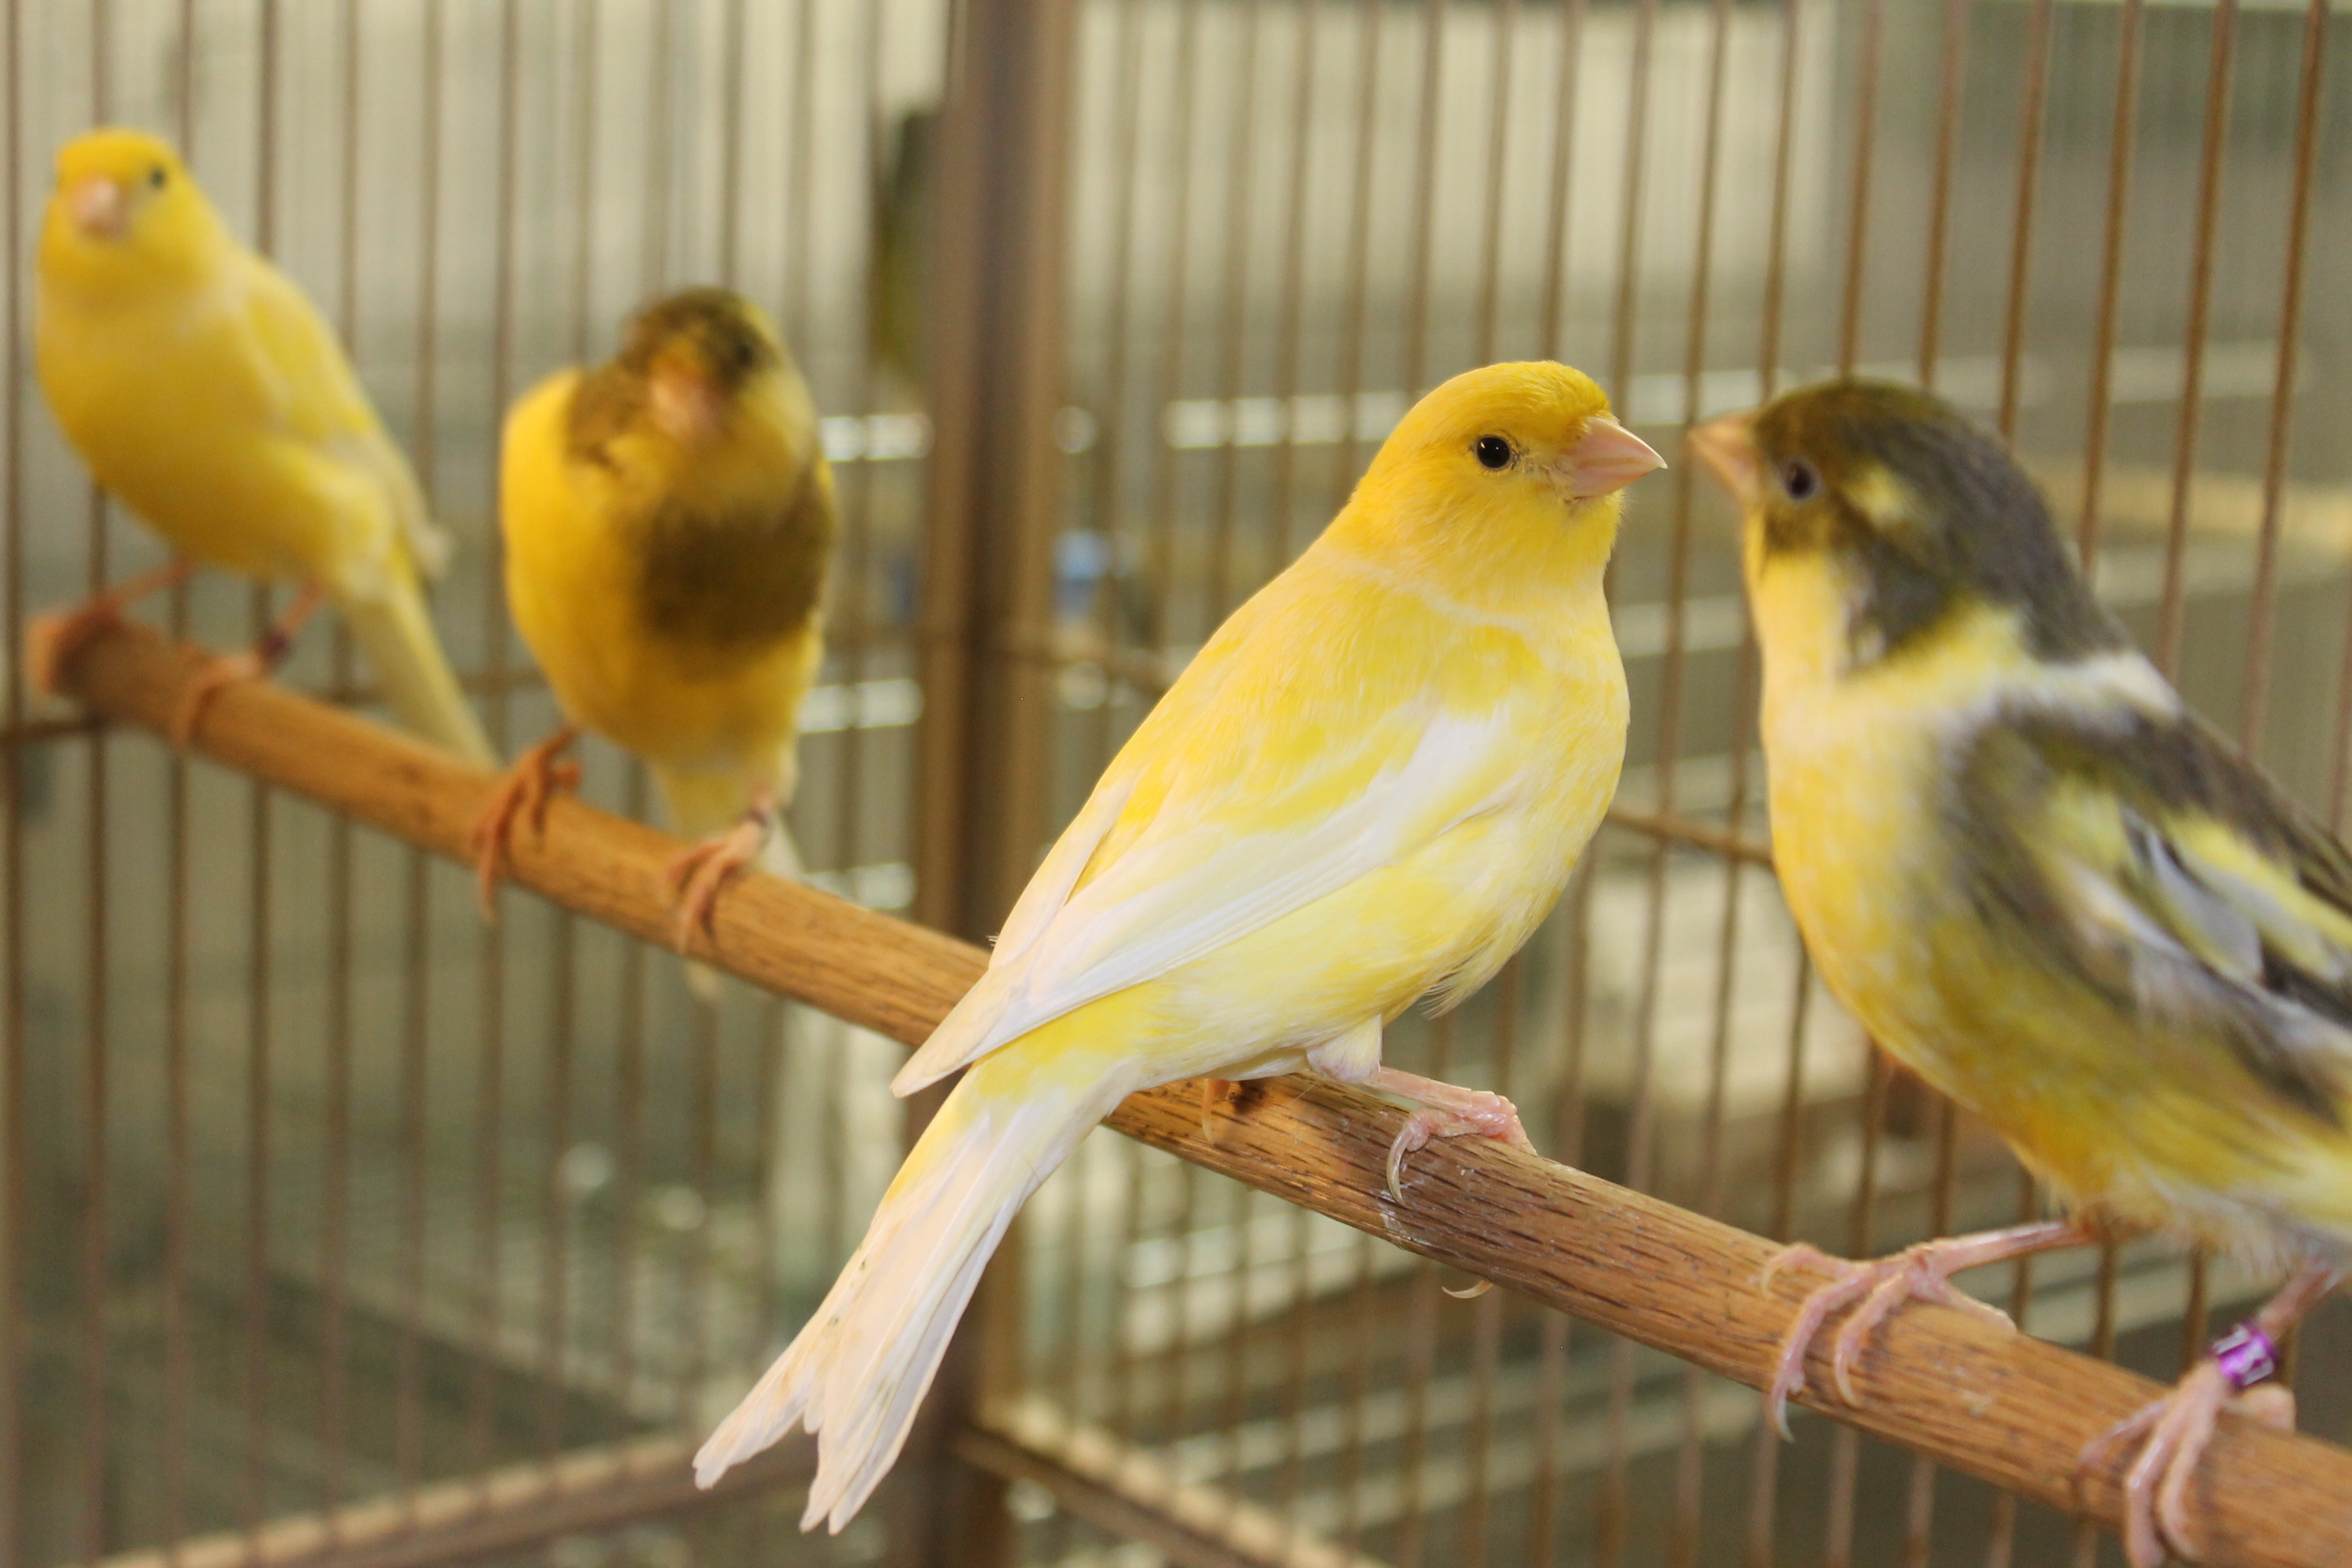 Los pájaros suelen ser mascotas muy comunes sin embargo, requieren de varios cuidados entre ellos una buena alimentación